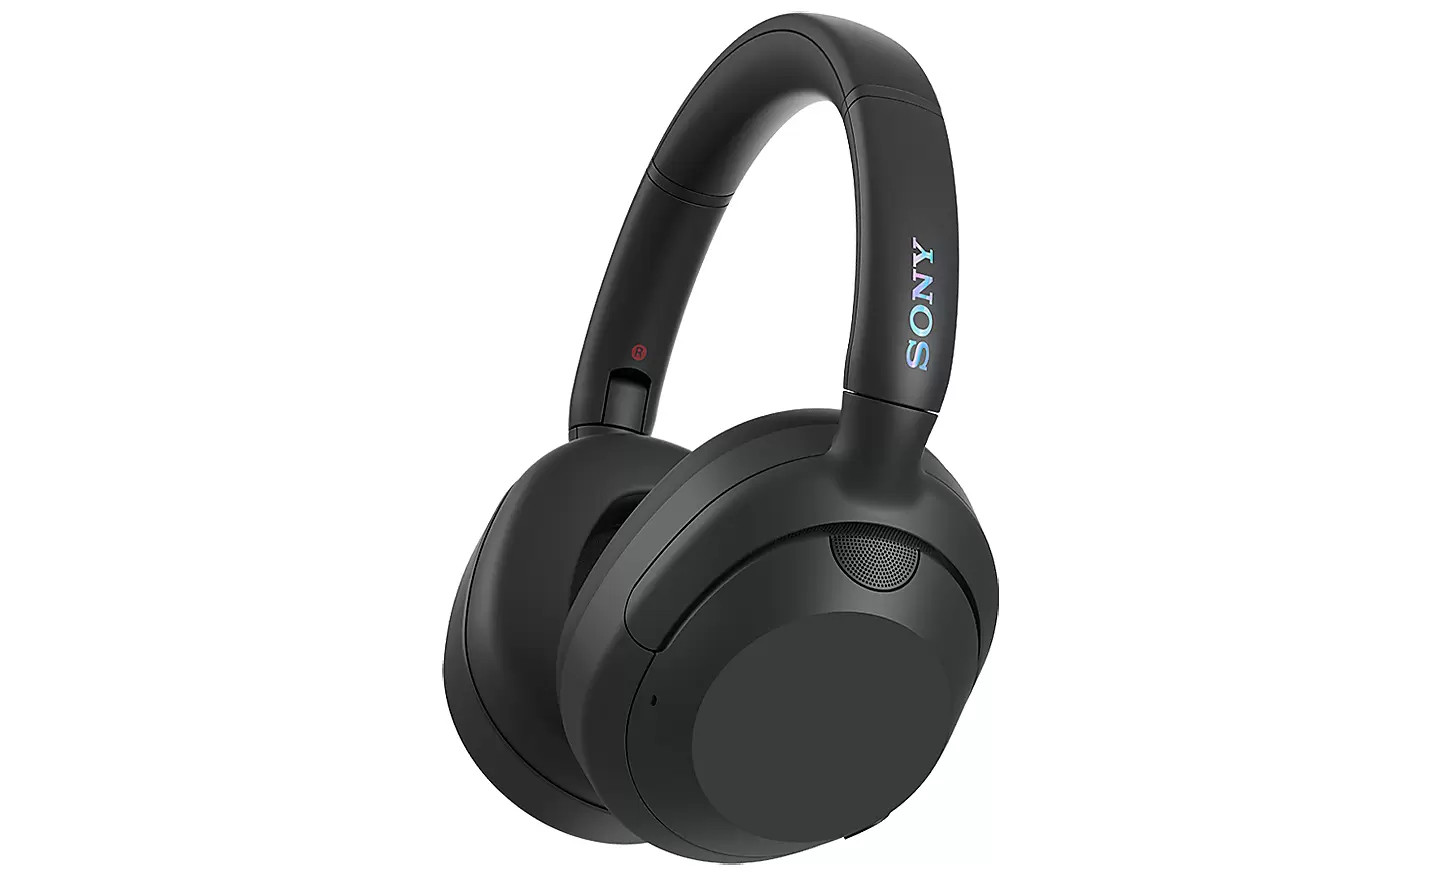 Sony ULT WEAR wireless noise cancelling headphones